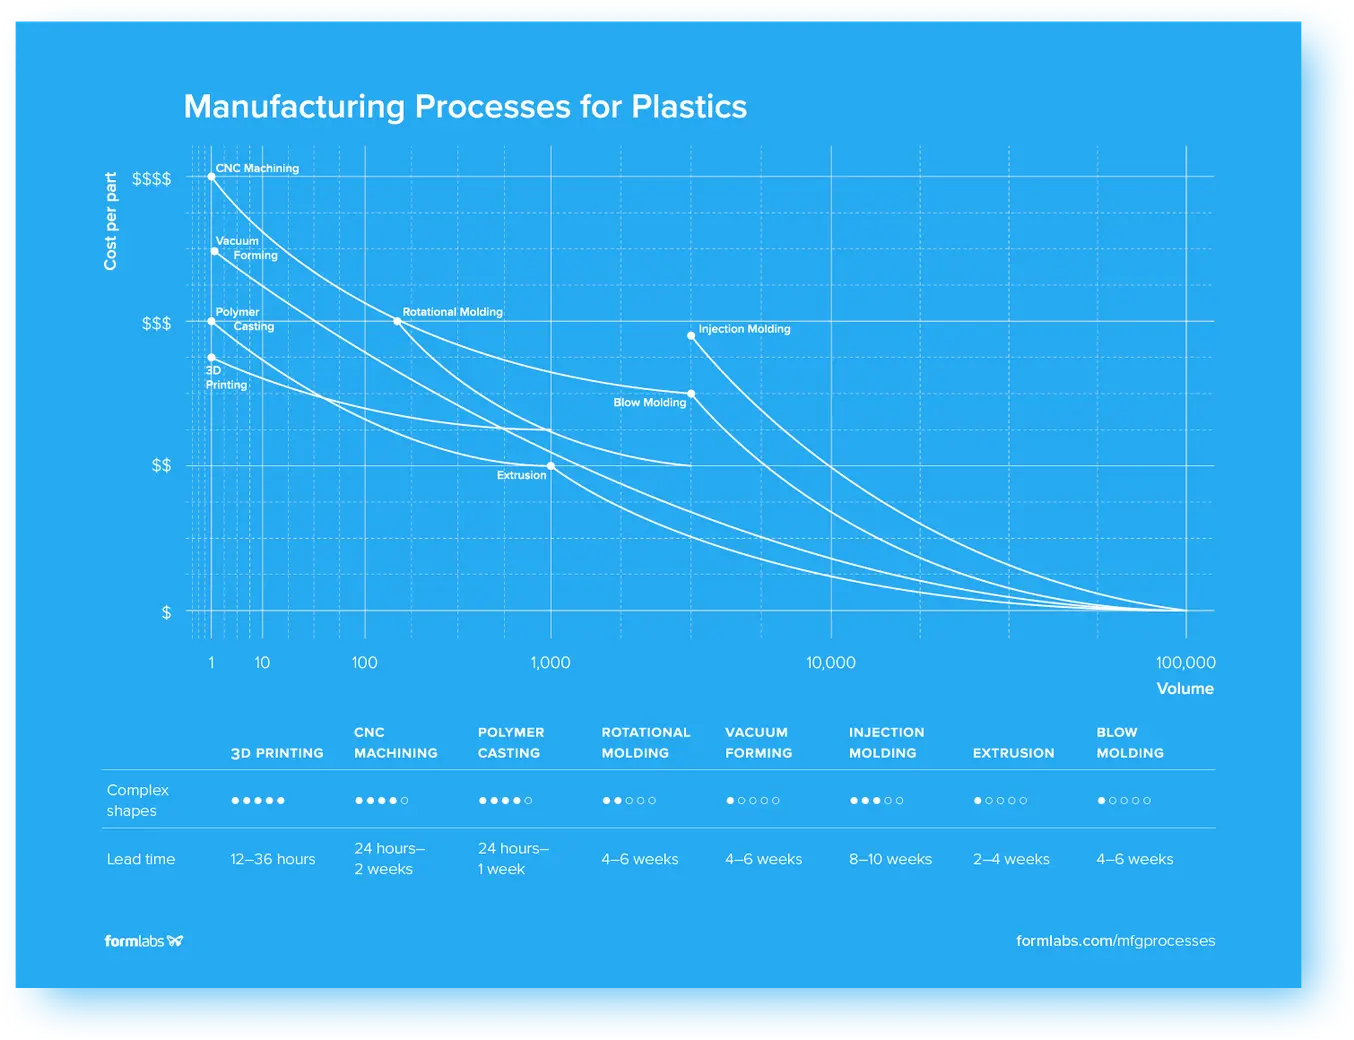 Grafik zu Herstellungsverfahren für Kunststoff